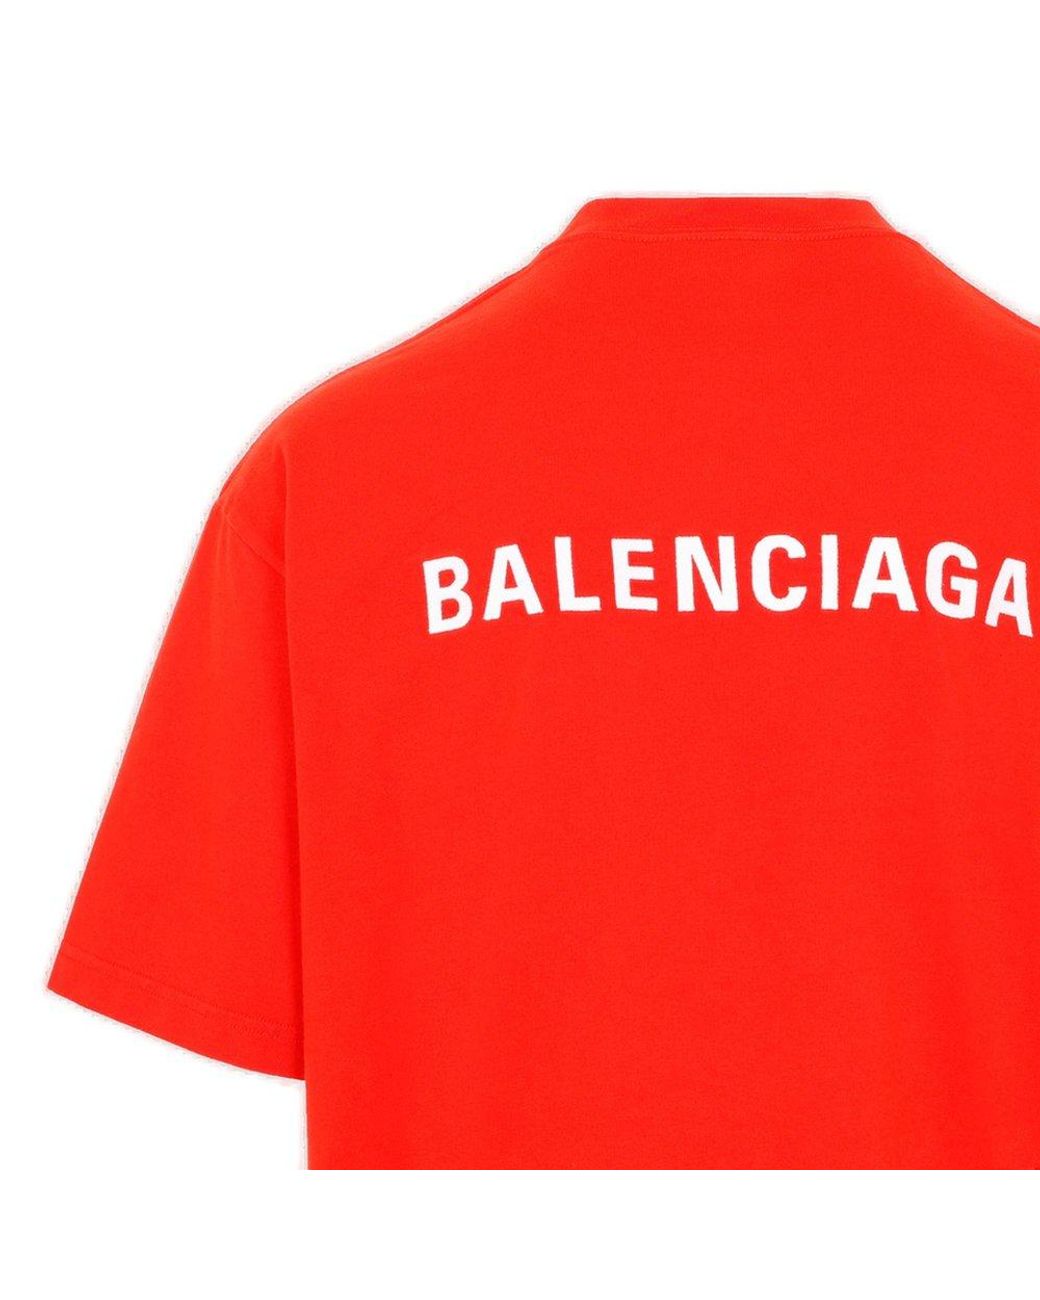 Chi tiết 58+ về shirt balenciaga hay nhất - cdgdbentre.edu.vn